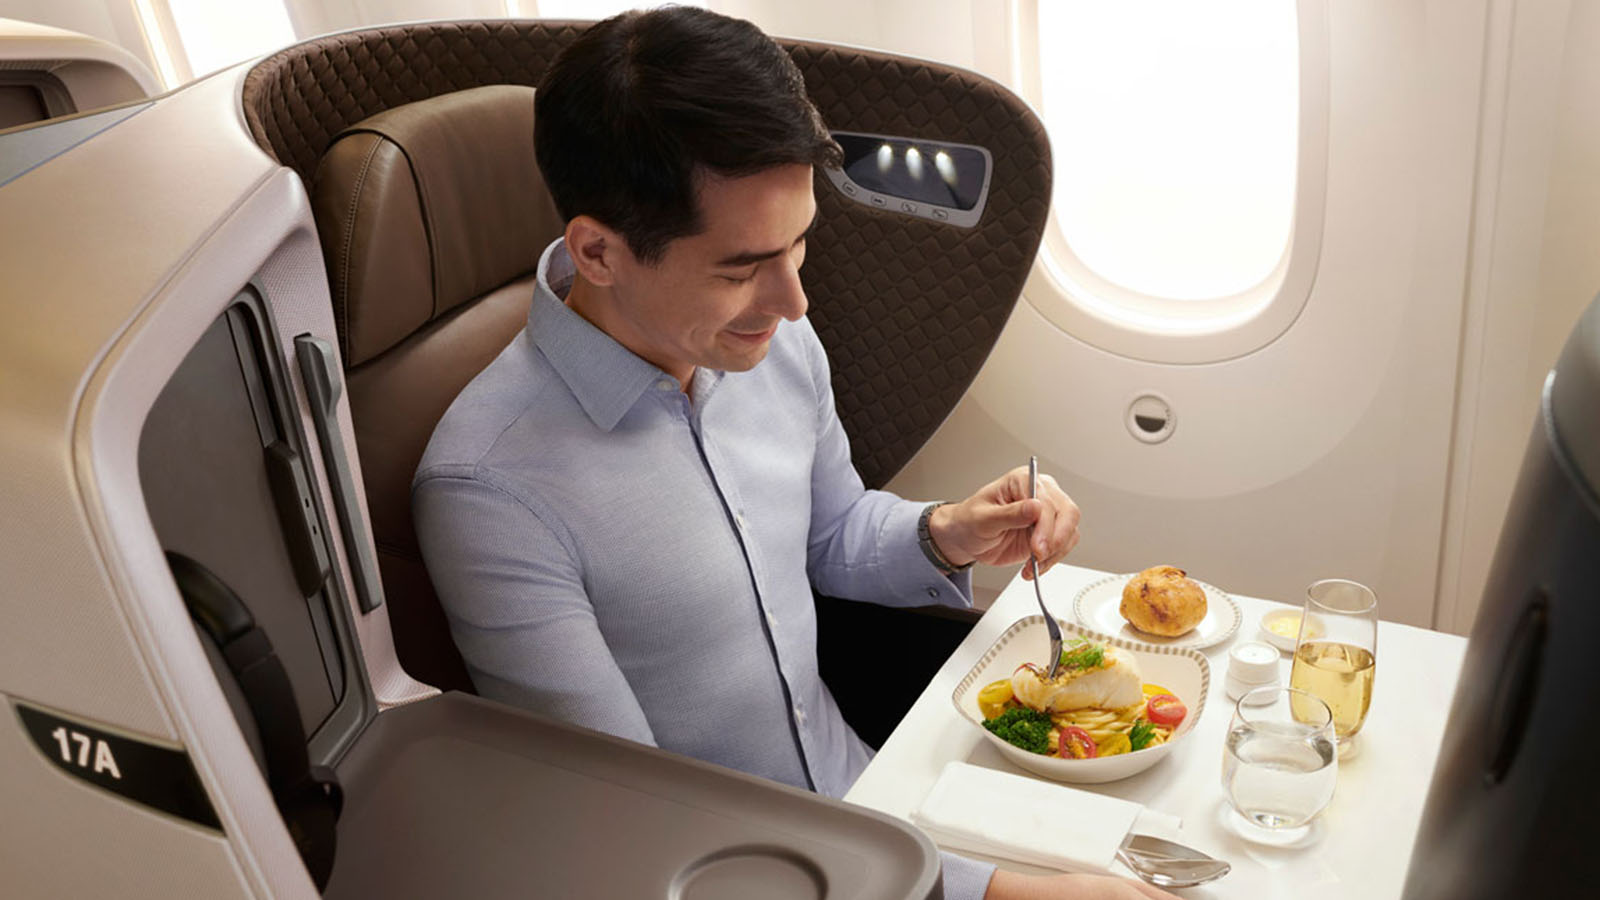 Singapore Airlines' medium-haul Business Class